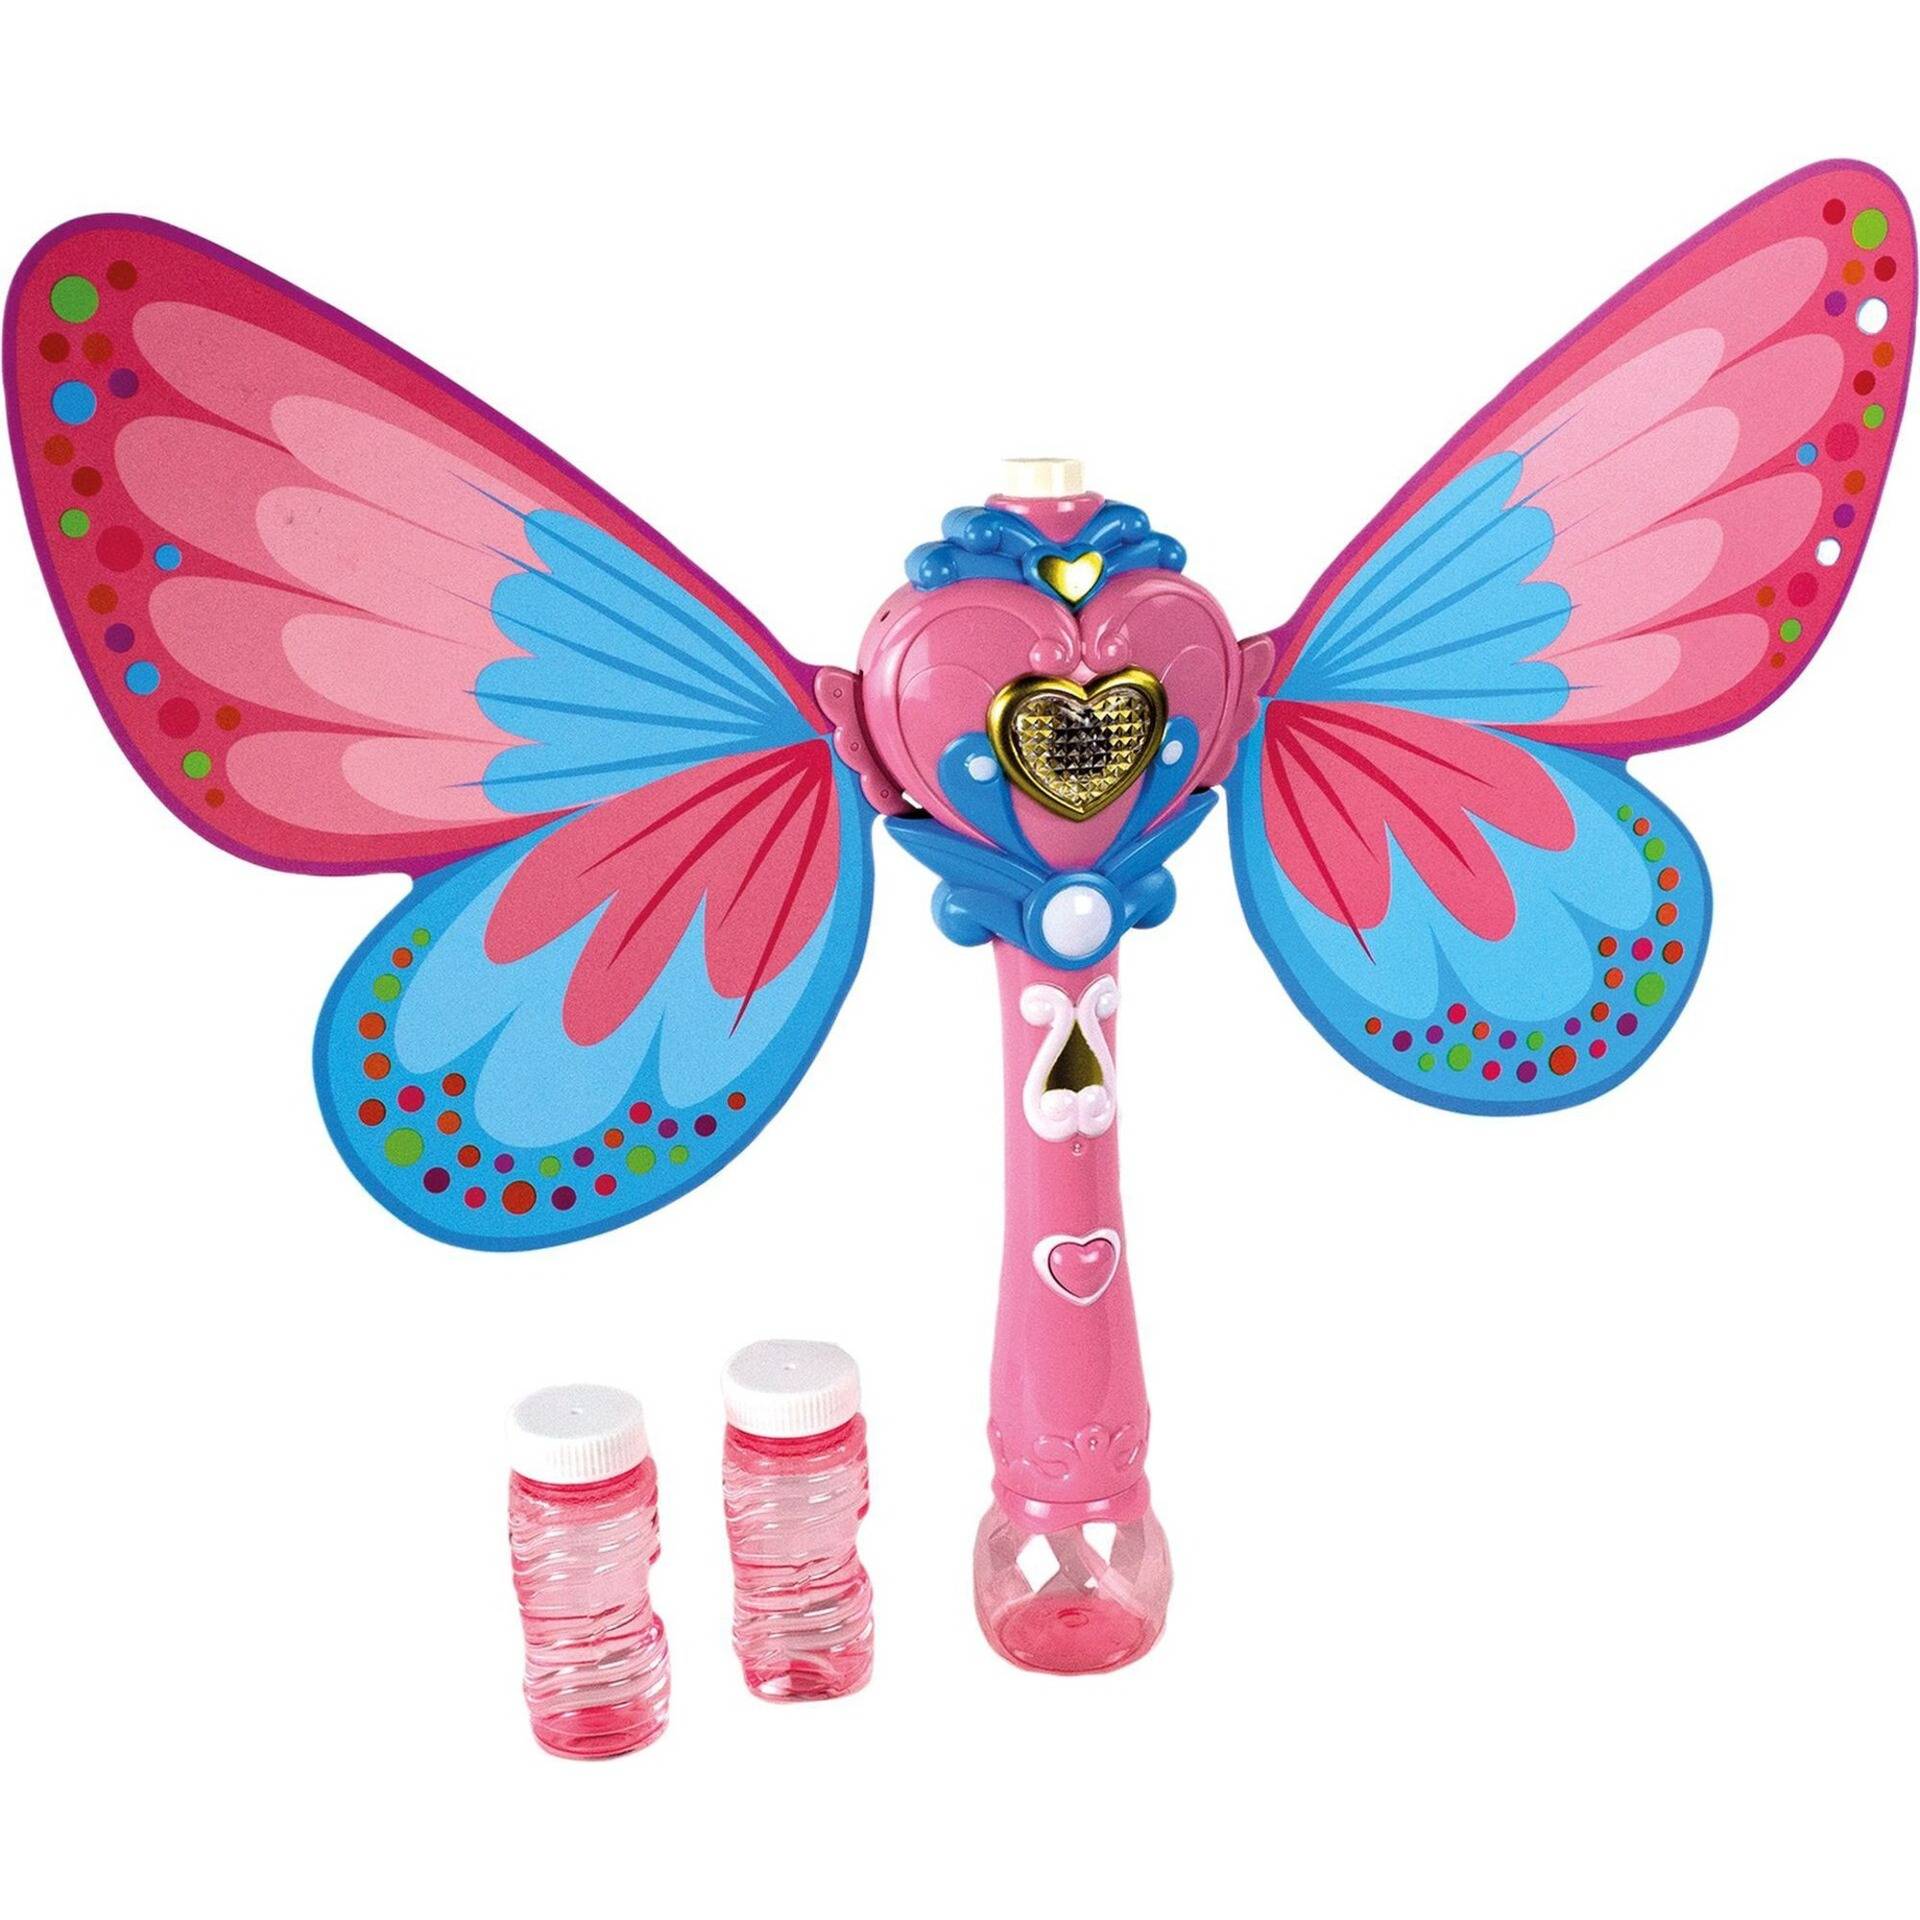 Magic Zauberstab Butterfly, Seifenblasen von Pustefix